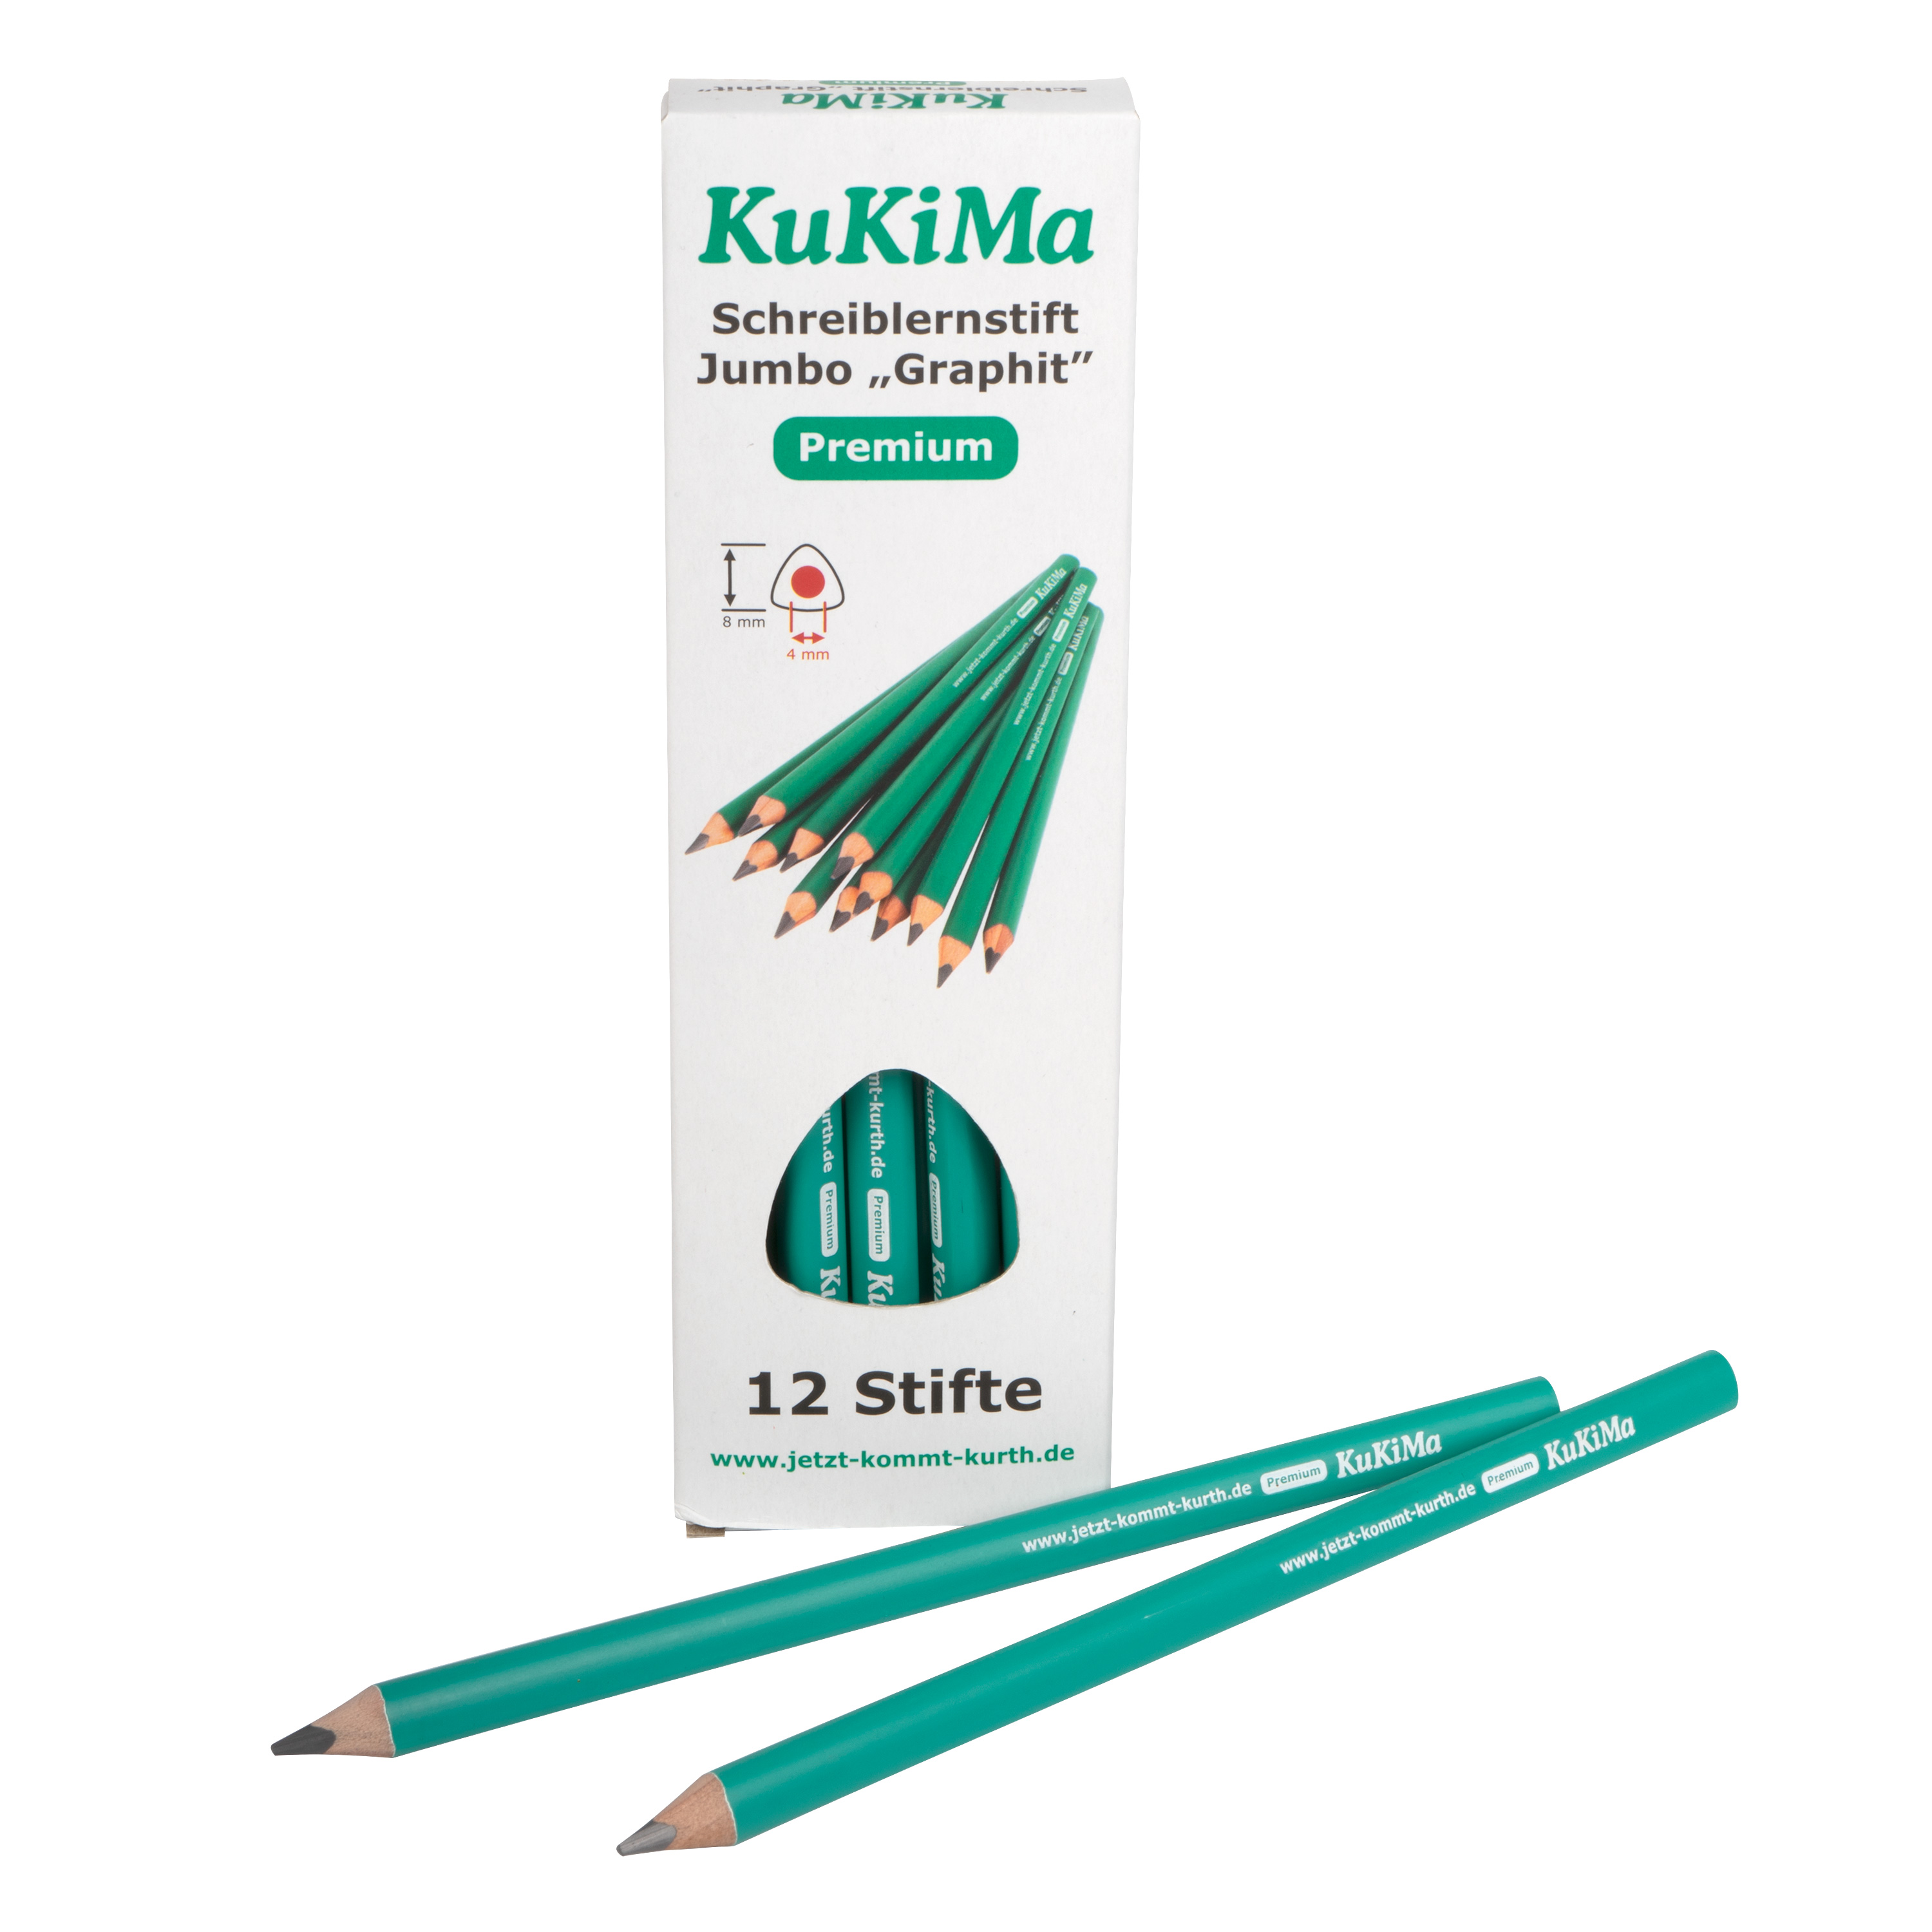 KuKiMa Schreiblernstifte Jumbo 'Graphit', 12 Stück